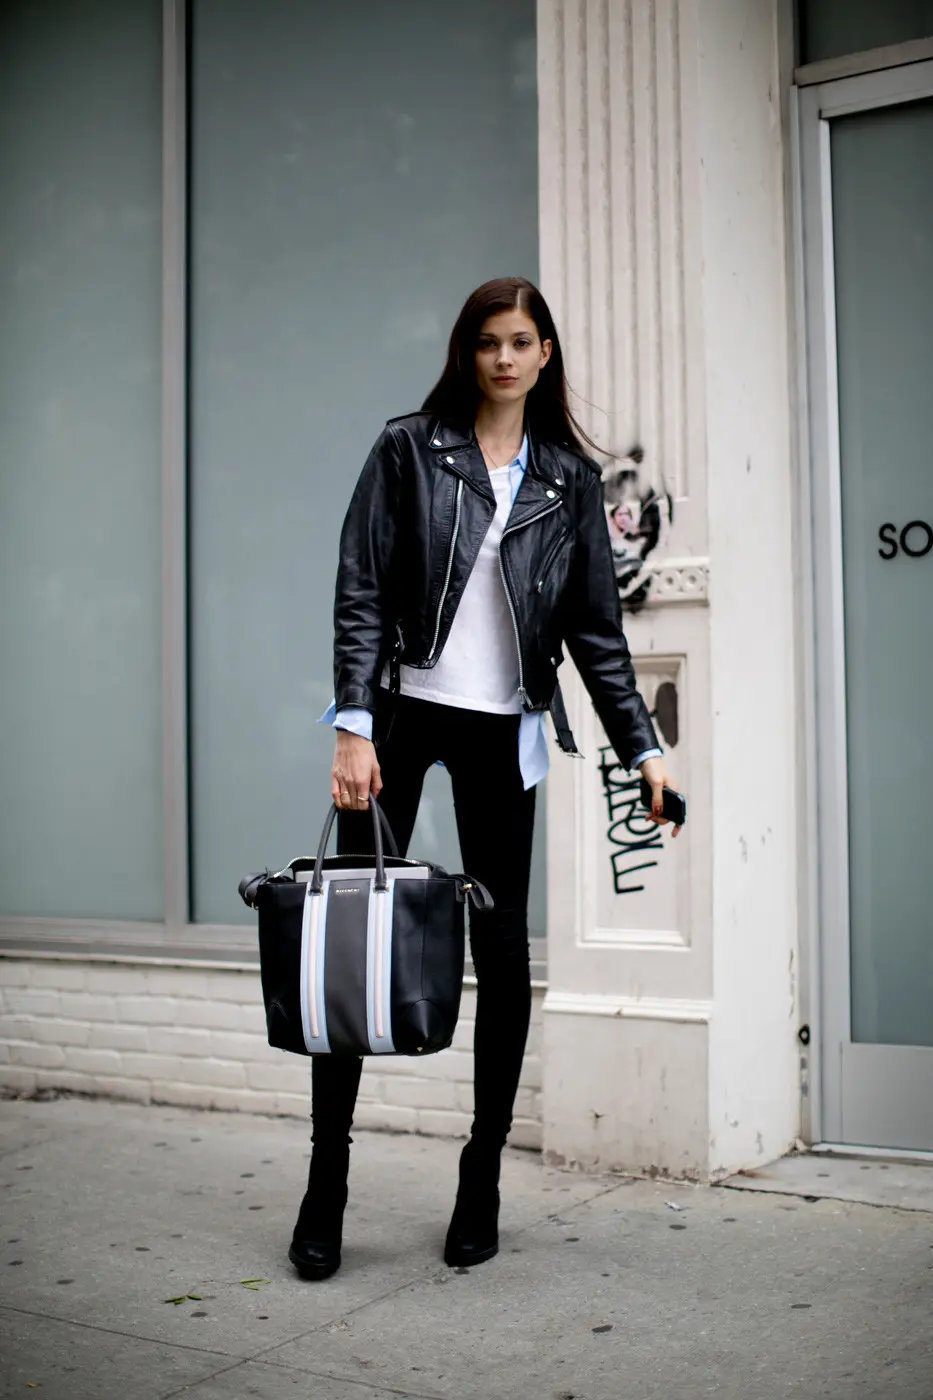 Leather jacket yang bikin penampilan keren ala street styler. (Image: fashiongum.com)